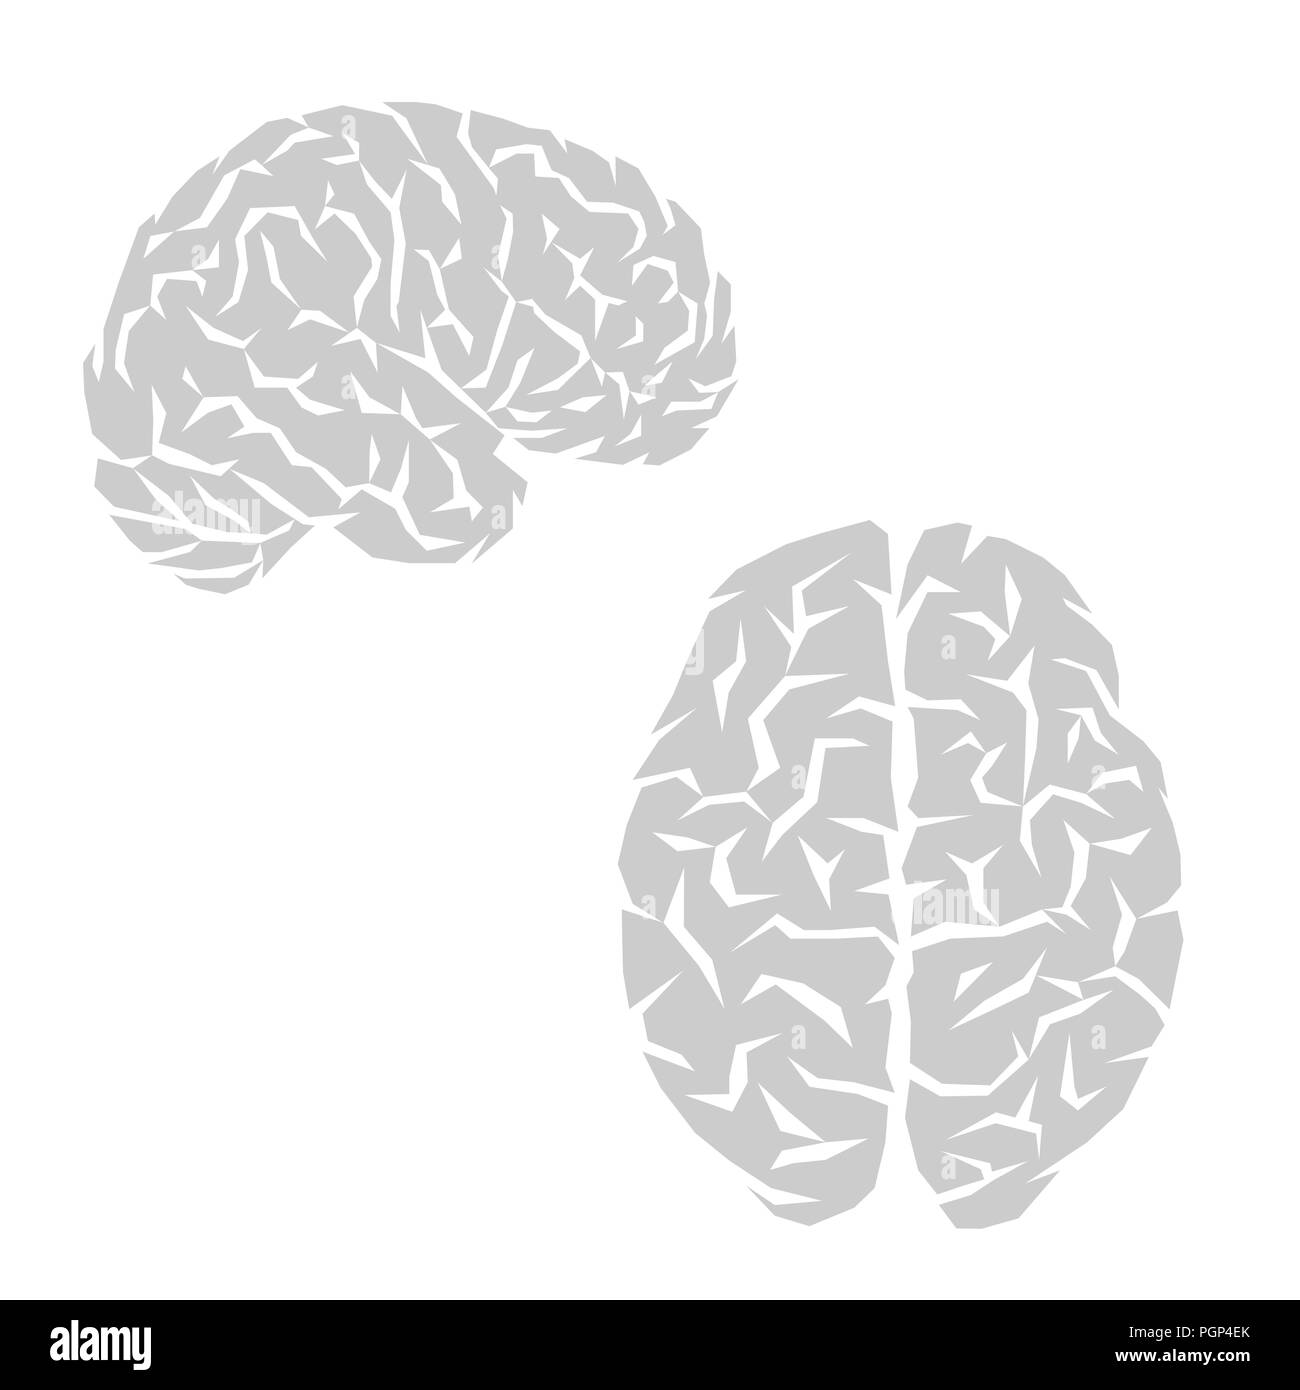 Abstrakte grau menschliche Gehirn Silhouetten auf weißem Hintergrund Stock Vektor